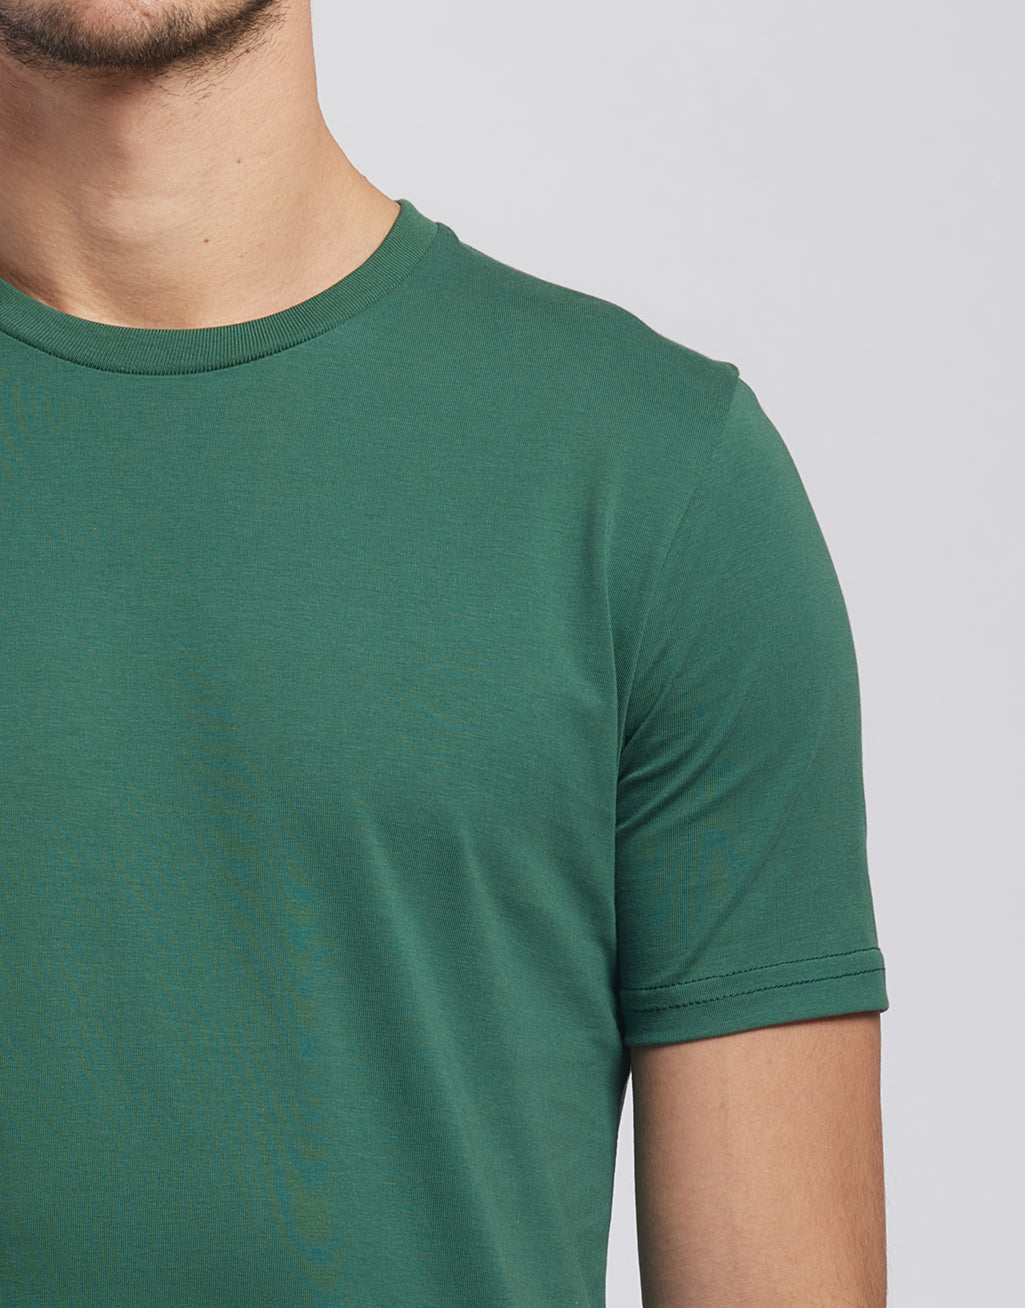 Descartes - T-shirt coton bio homme - couleurs